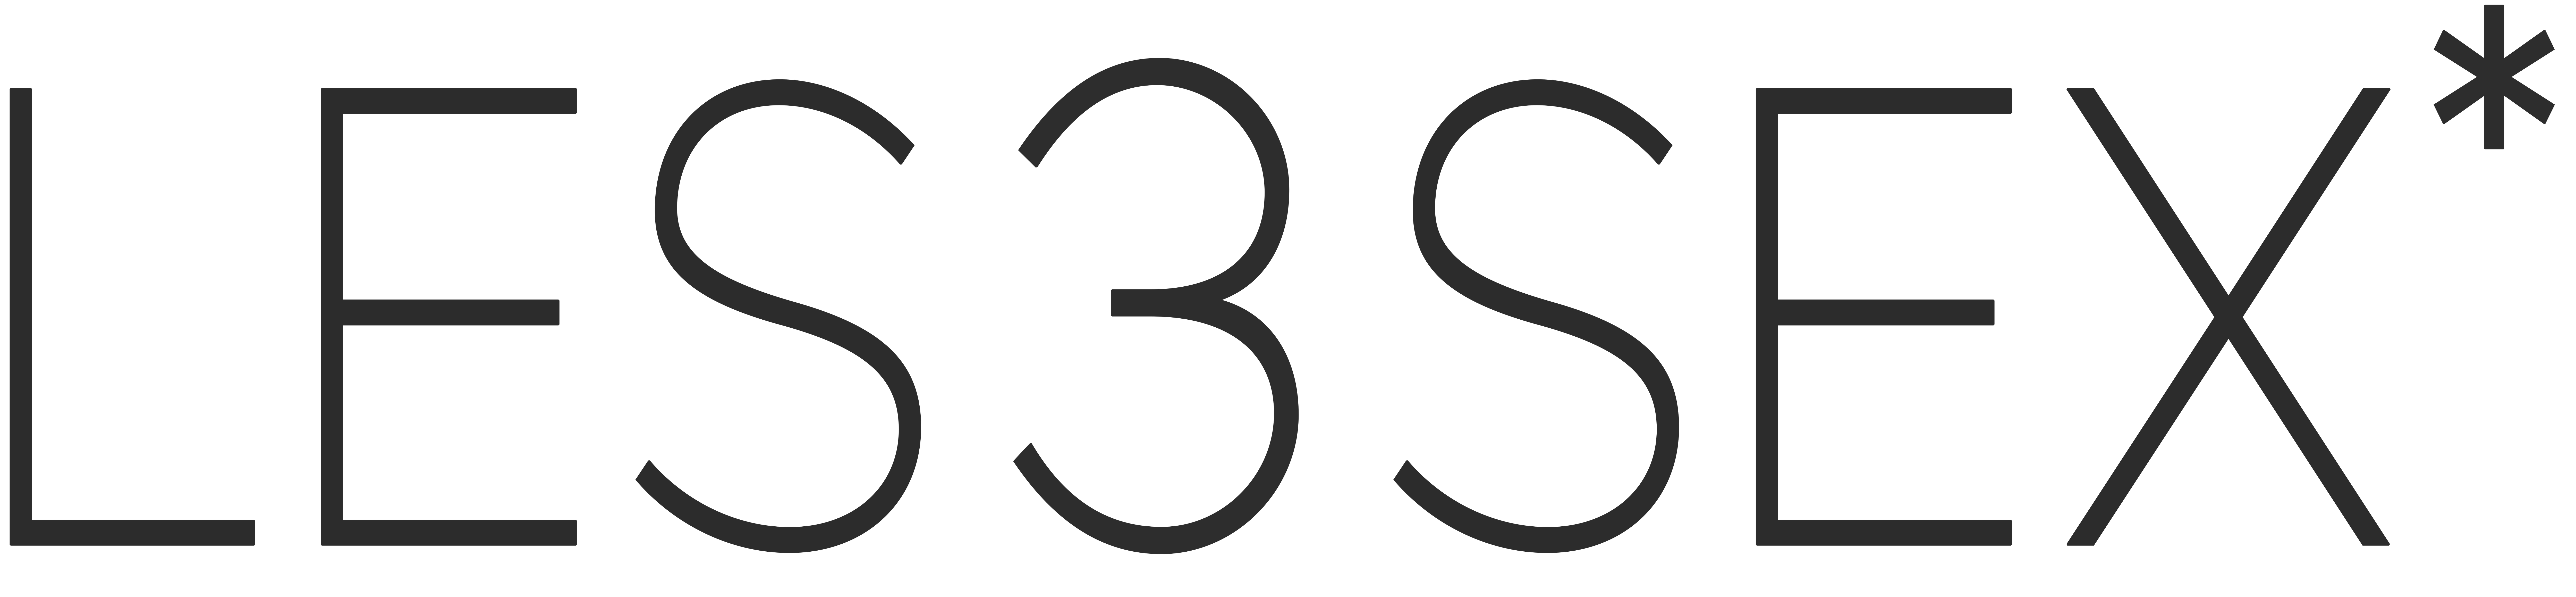 Logo de l'organisme Les 3 sex*